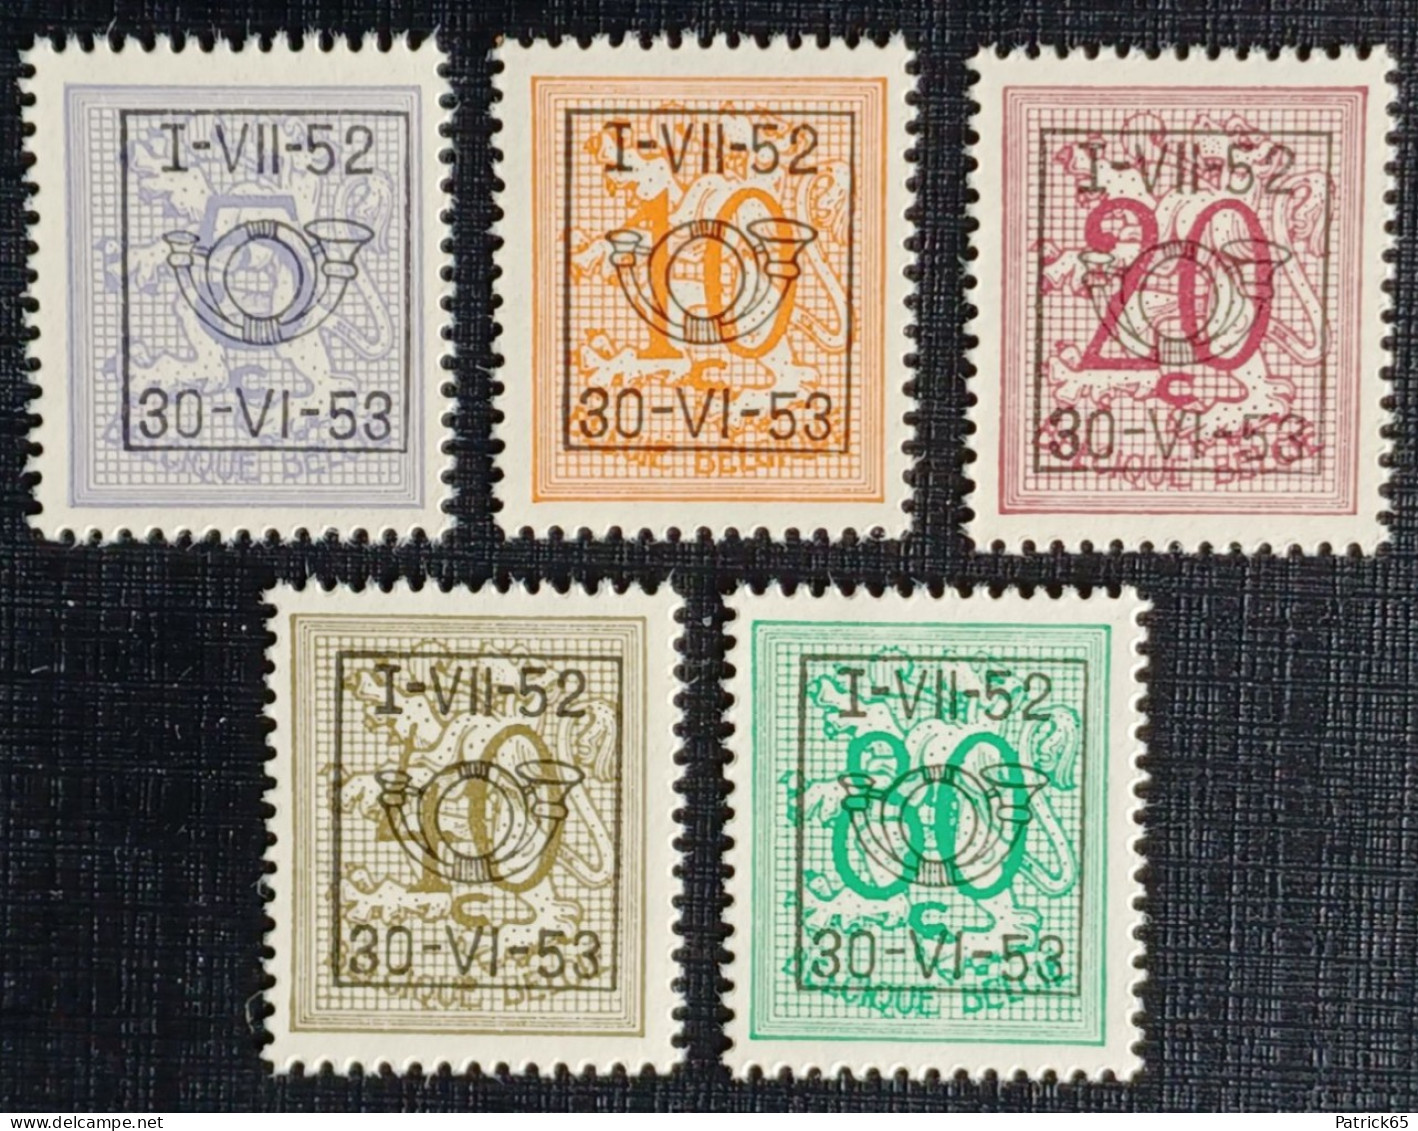 Belgie 1952/53 Obp.nrs.PRE 625/629 Cijfer Op Heraldieke Leeuw - Type D - Reeks 43 - Typografisch 1951-80 (Cijfer Op Leeuw)